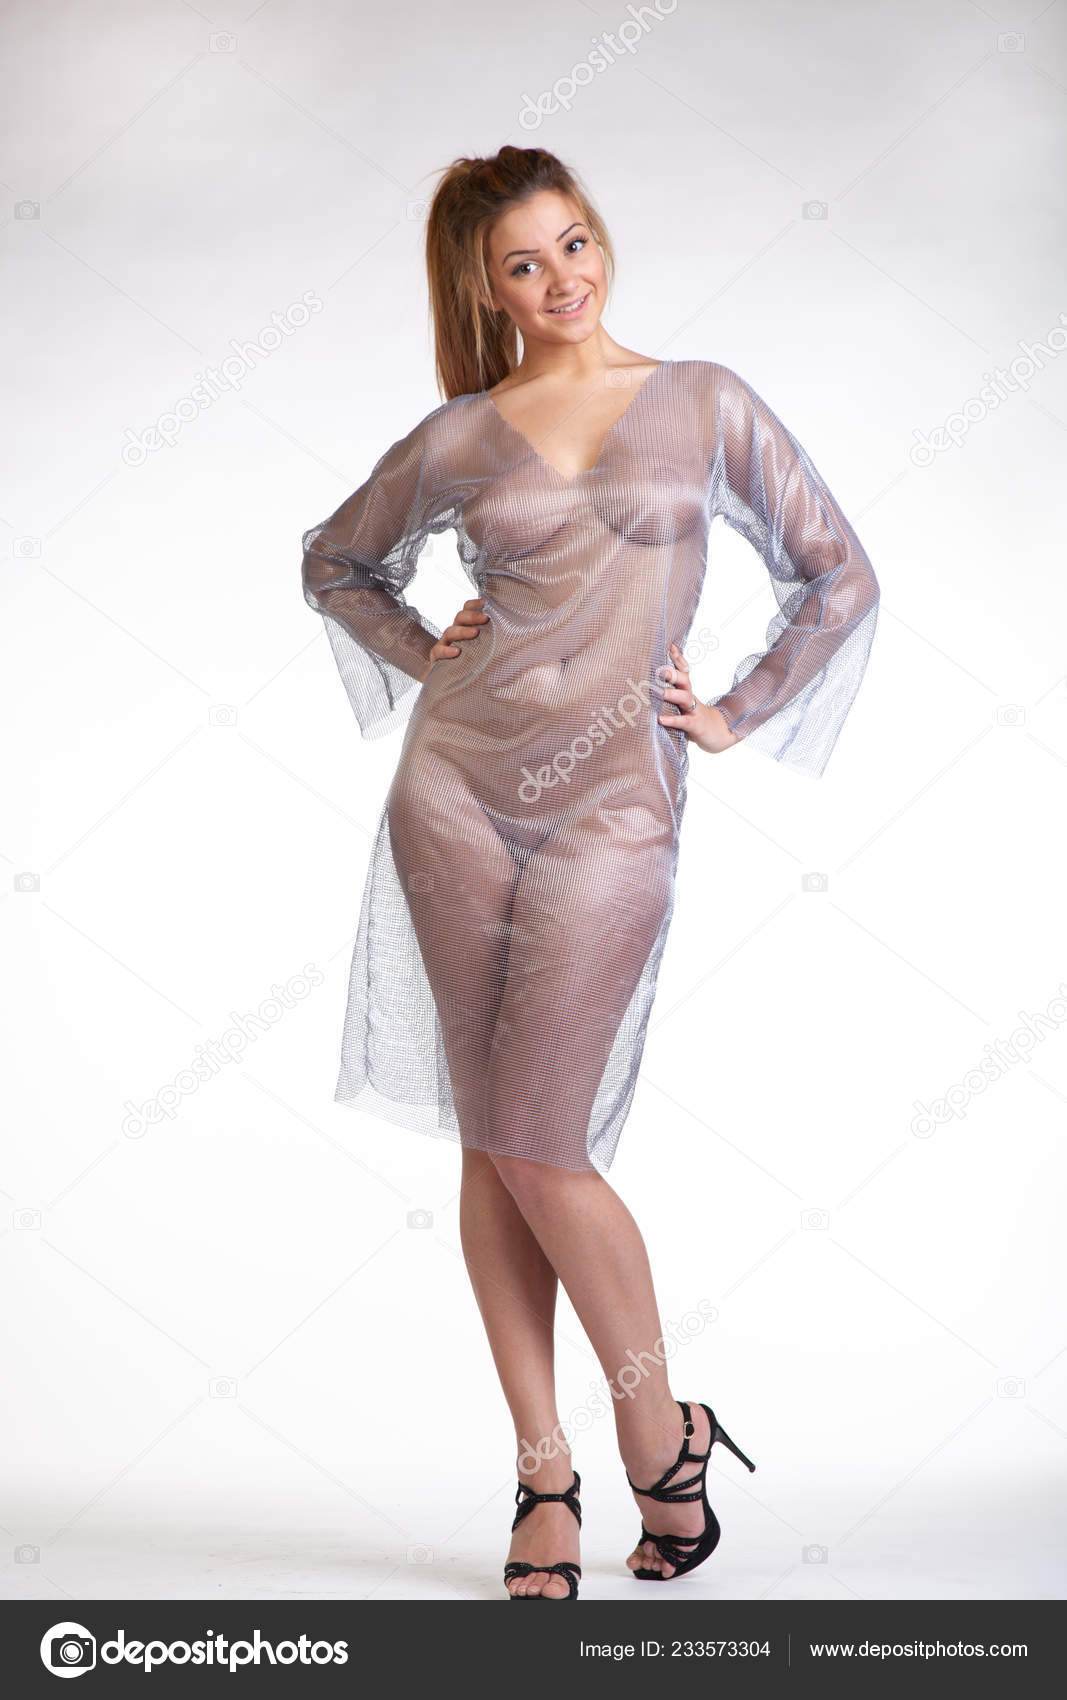 https://st4n.depositphotos.com/10086424/23357/i/1600/depositphotos_233573304-stock-photo-young-beautiful-girl-posing-nude.jpg